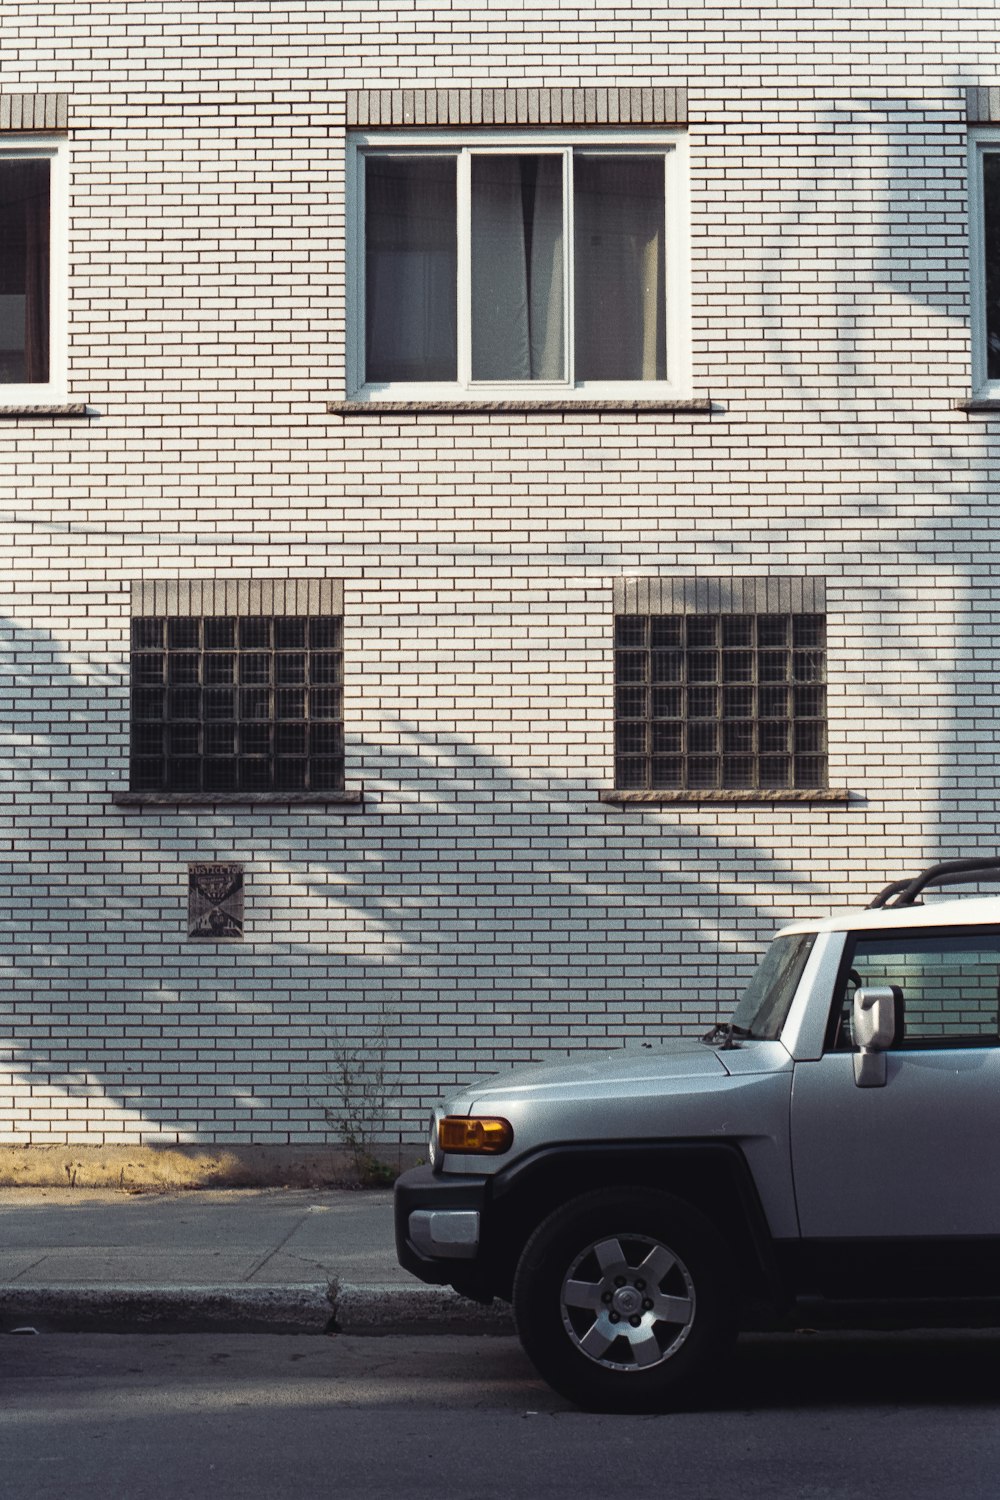 Voiture grise garée à côté d’un bâtiment en briques brunes